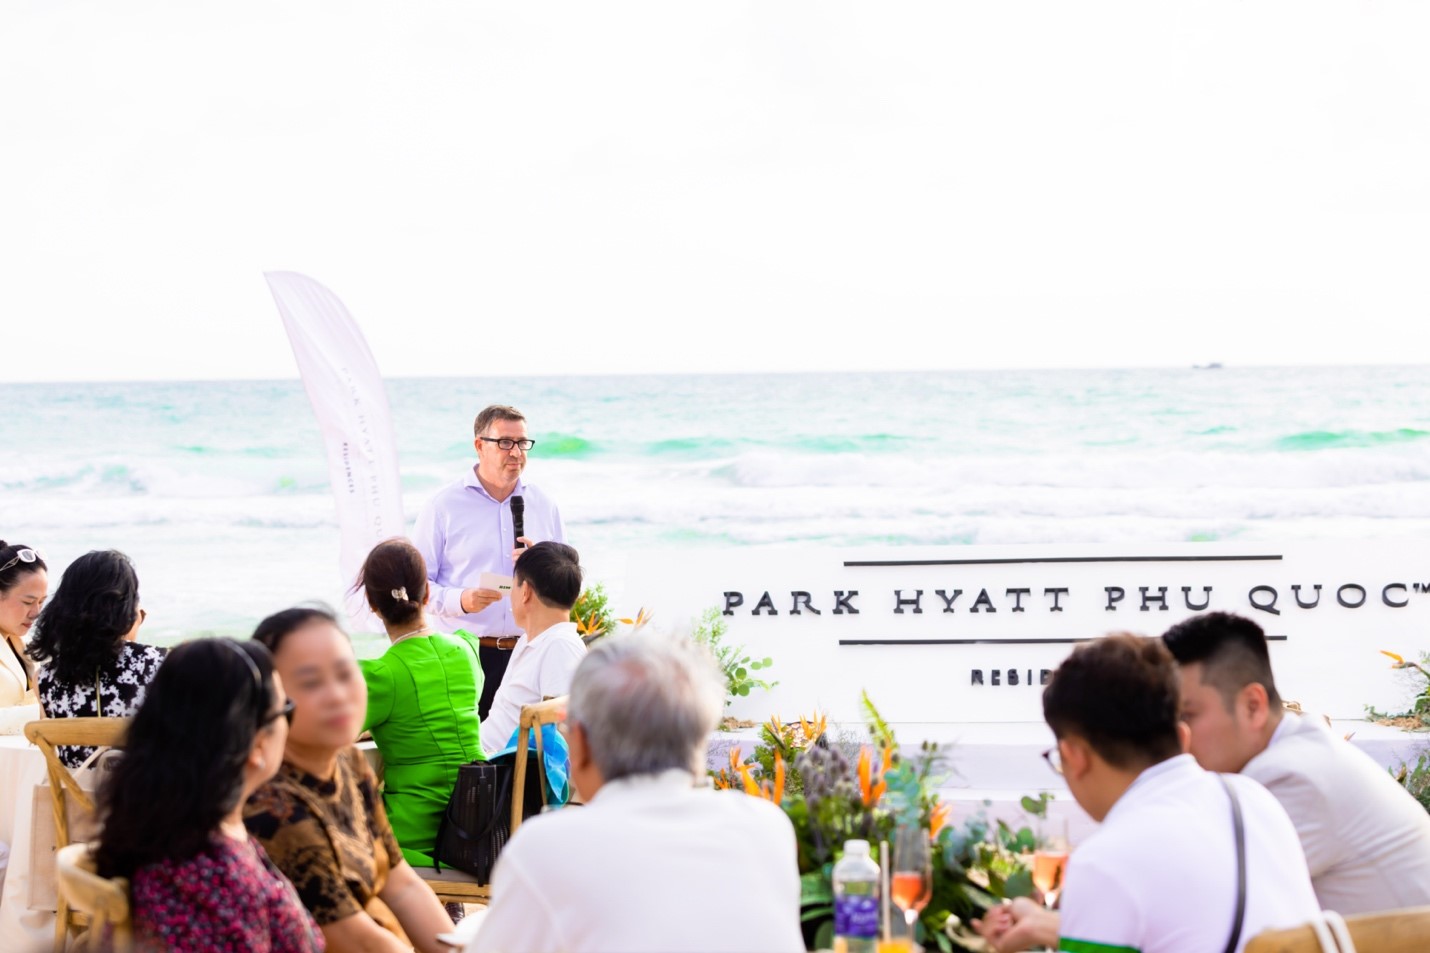 Park Hyatt Phu Quoc Residences: Mừng bạn về nhà! - Ảnh 1.